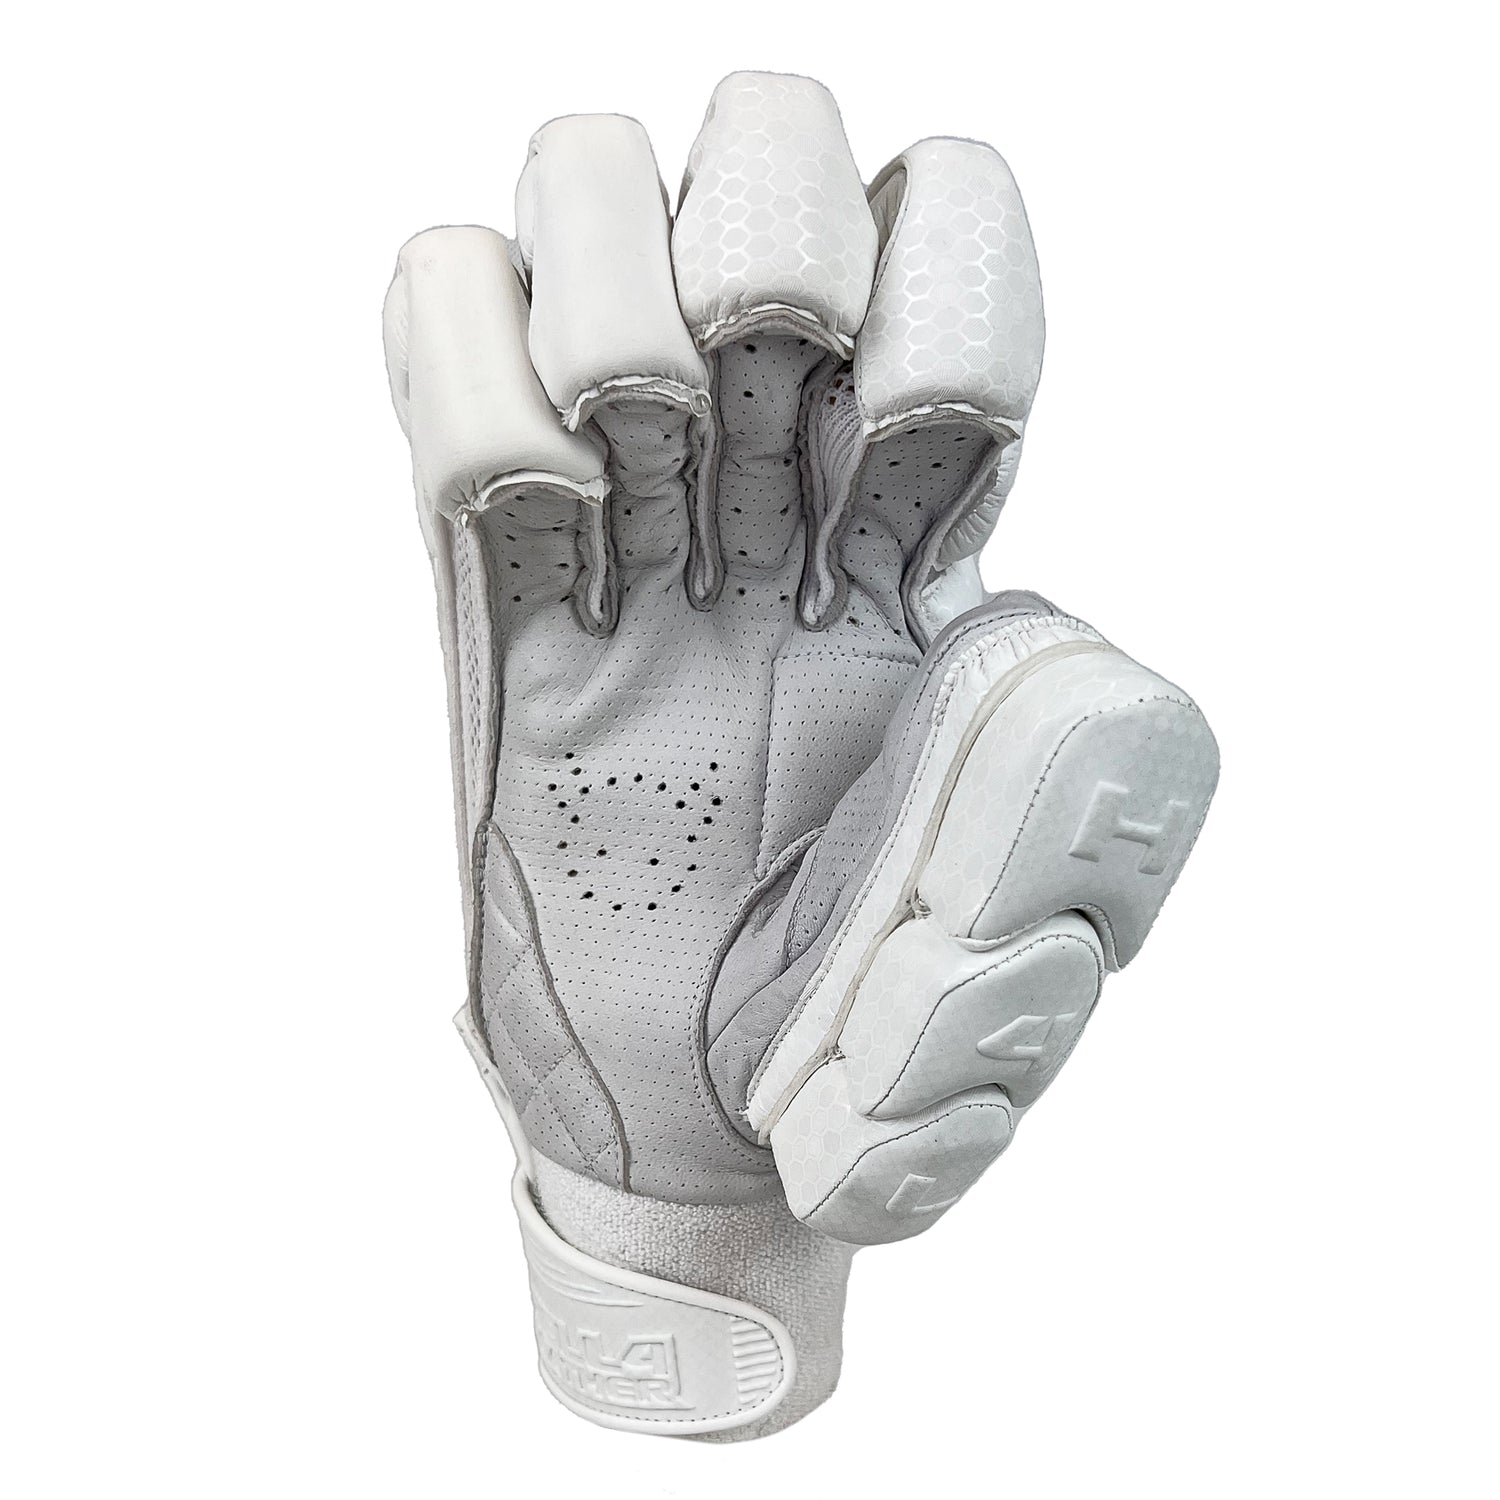 Tip-Tech All White Gloves